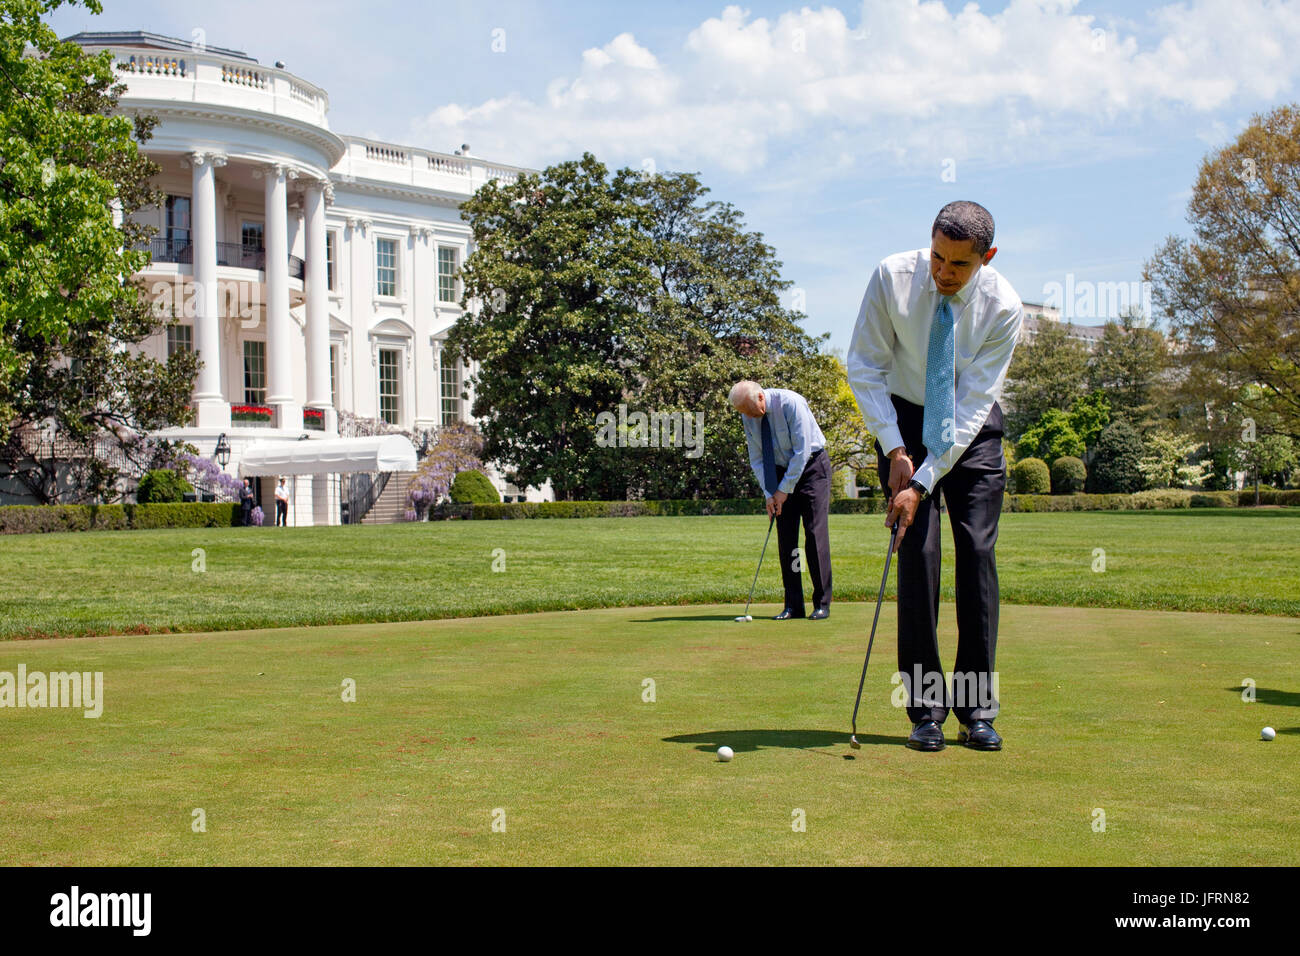 Le président Barack Obama et le Vice-président Joe Biden pratiquer leur mise sur la Maison Blanche et un vert le 24 avril 2009. Photo Officiel de la Maison Blanche par Pete Souza Banque D'Images